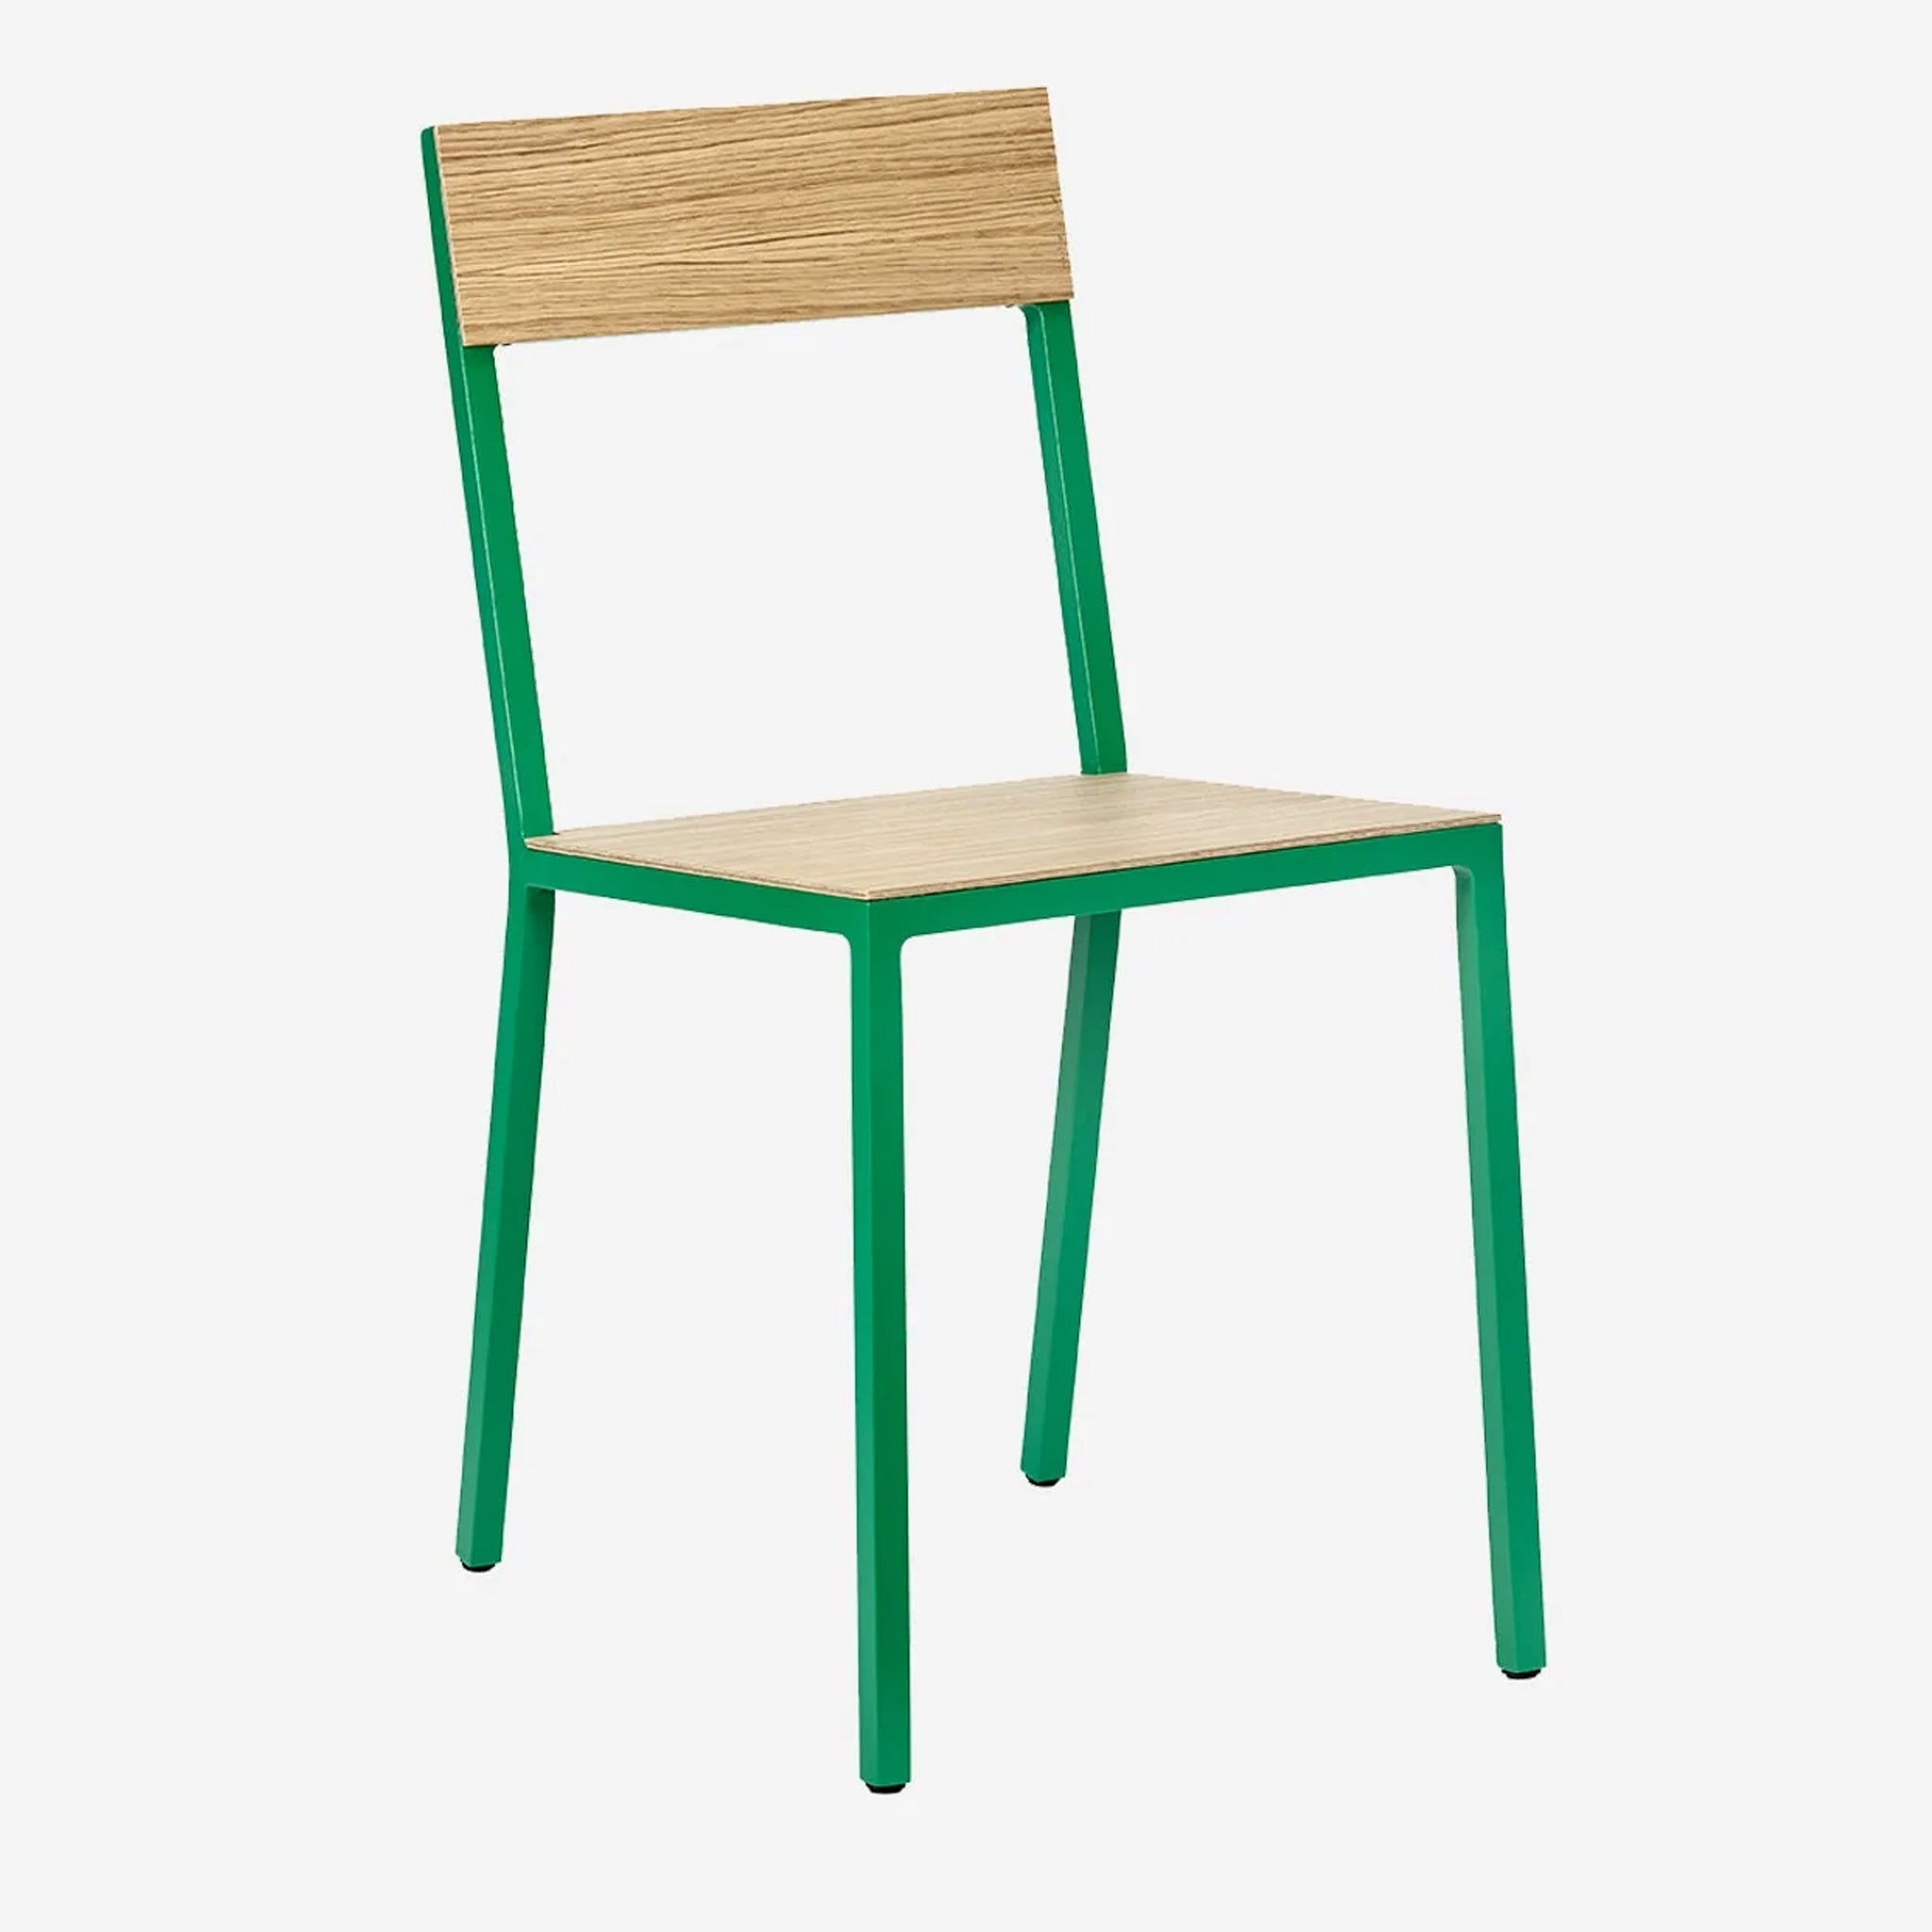 Valerie Objects Gartenstuhl | Alu Chair